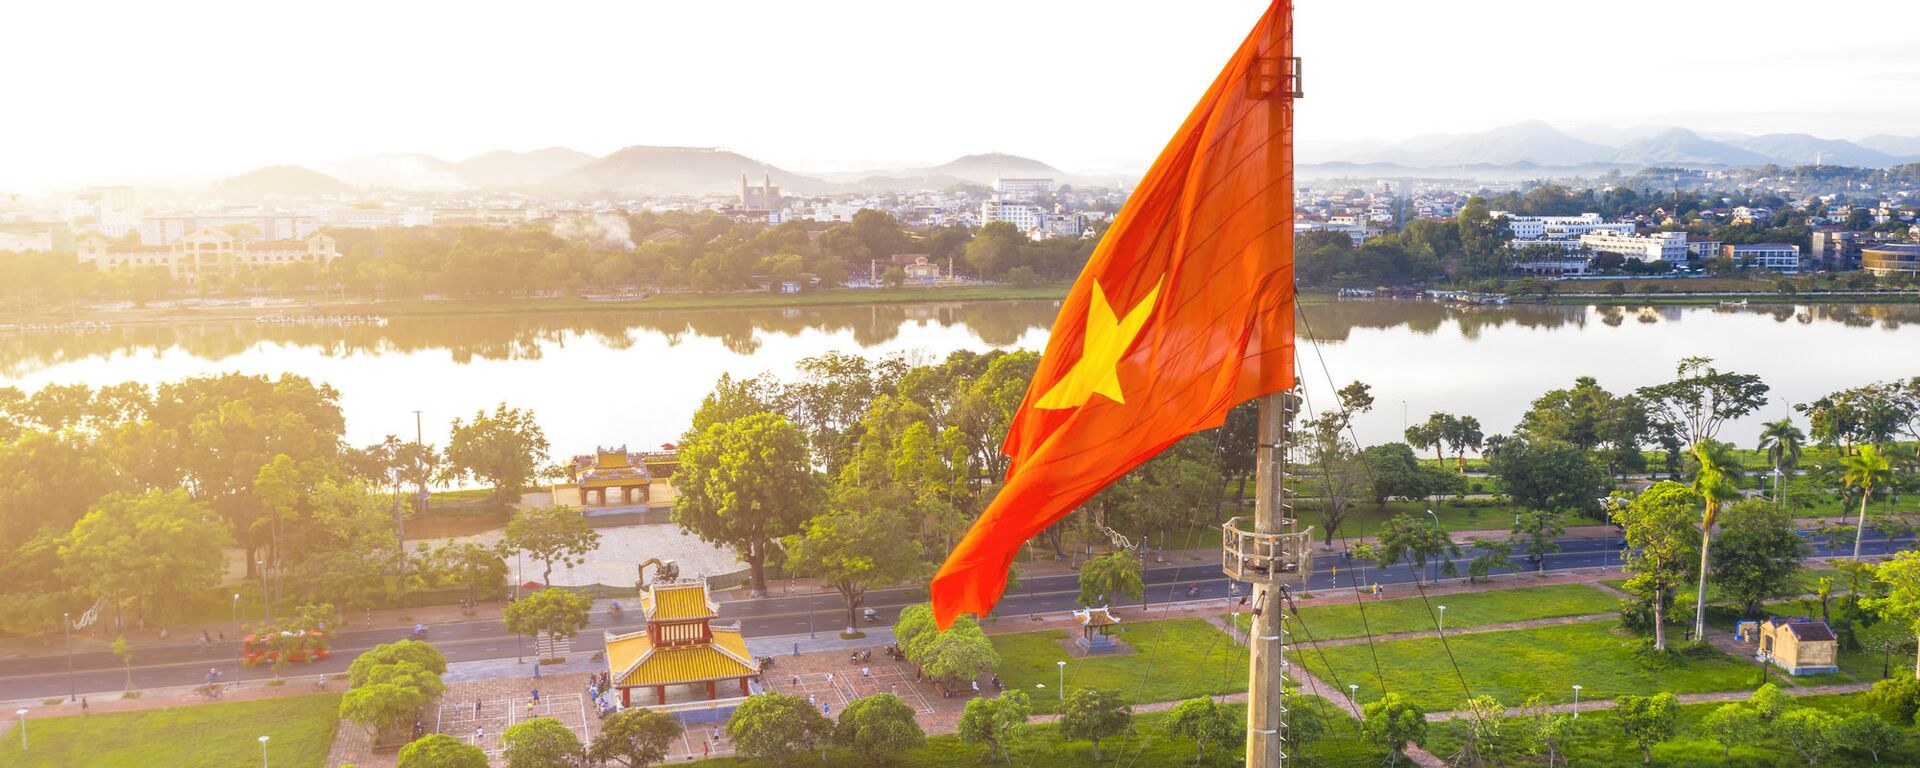 Hoàng thành Huế - Sputnik Việt Nam, 1920, 03.03.2021